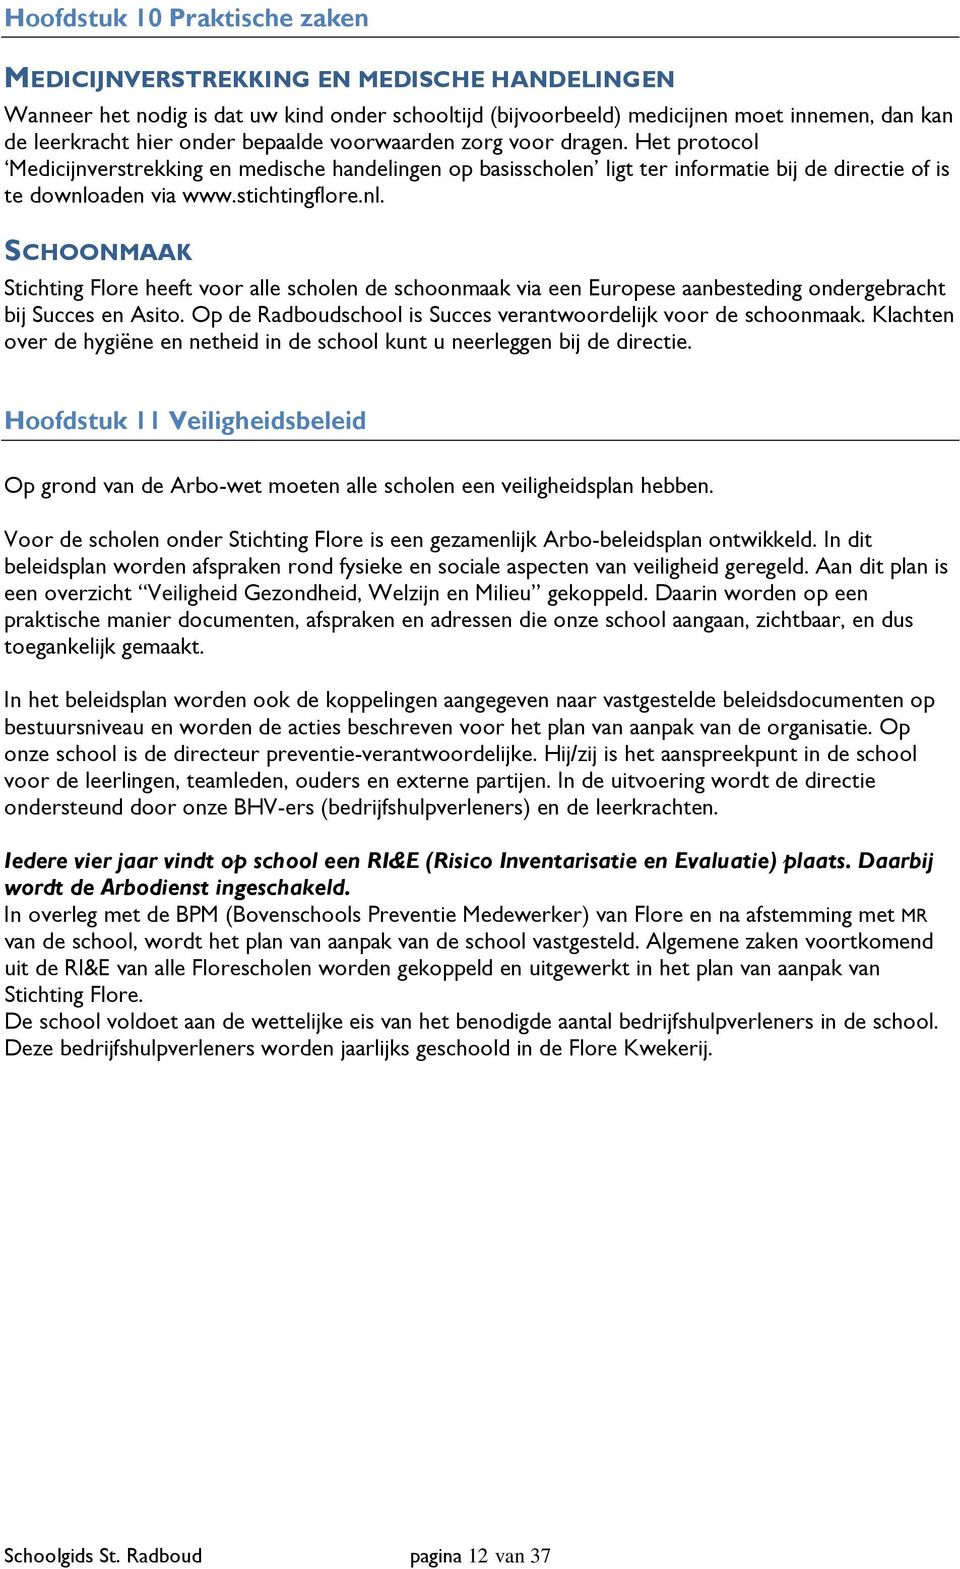 aden via www.stichtingflore.nl. SCHOONMAAK Stichting Flore heeft voor alle scholen de schoonmaak via een Europese aanbesteding ondergebracht bij Succes en Asito.